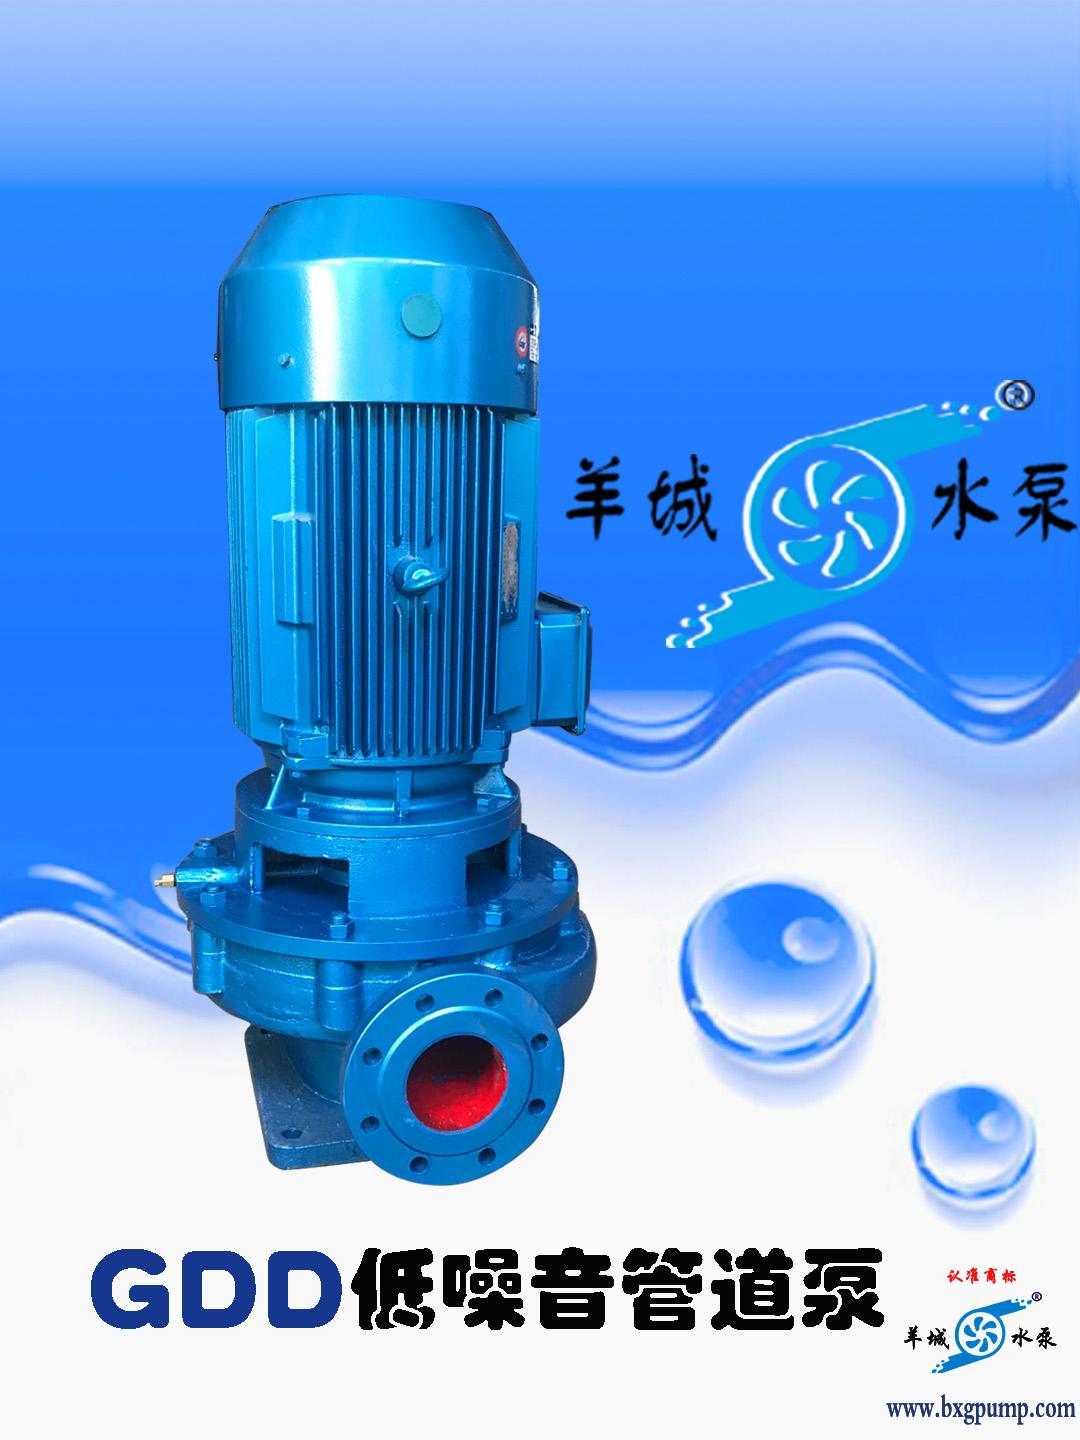 羊城水泵|GDD管道泵1.jpg